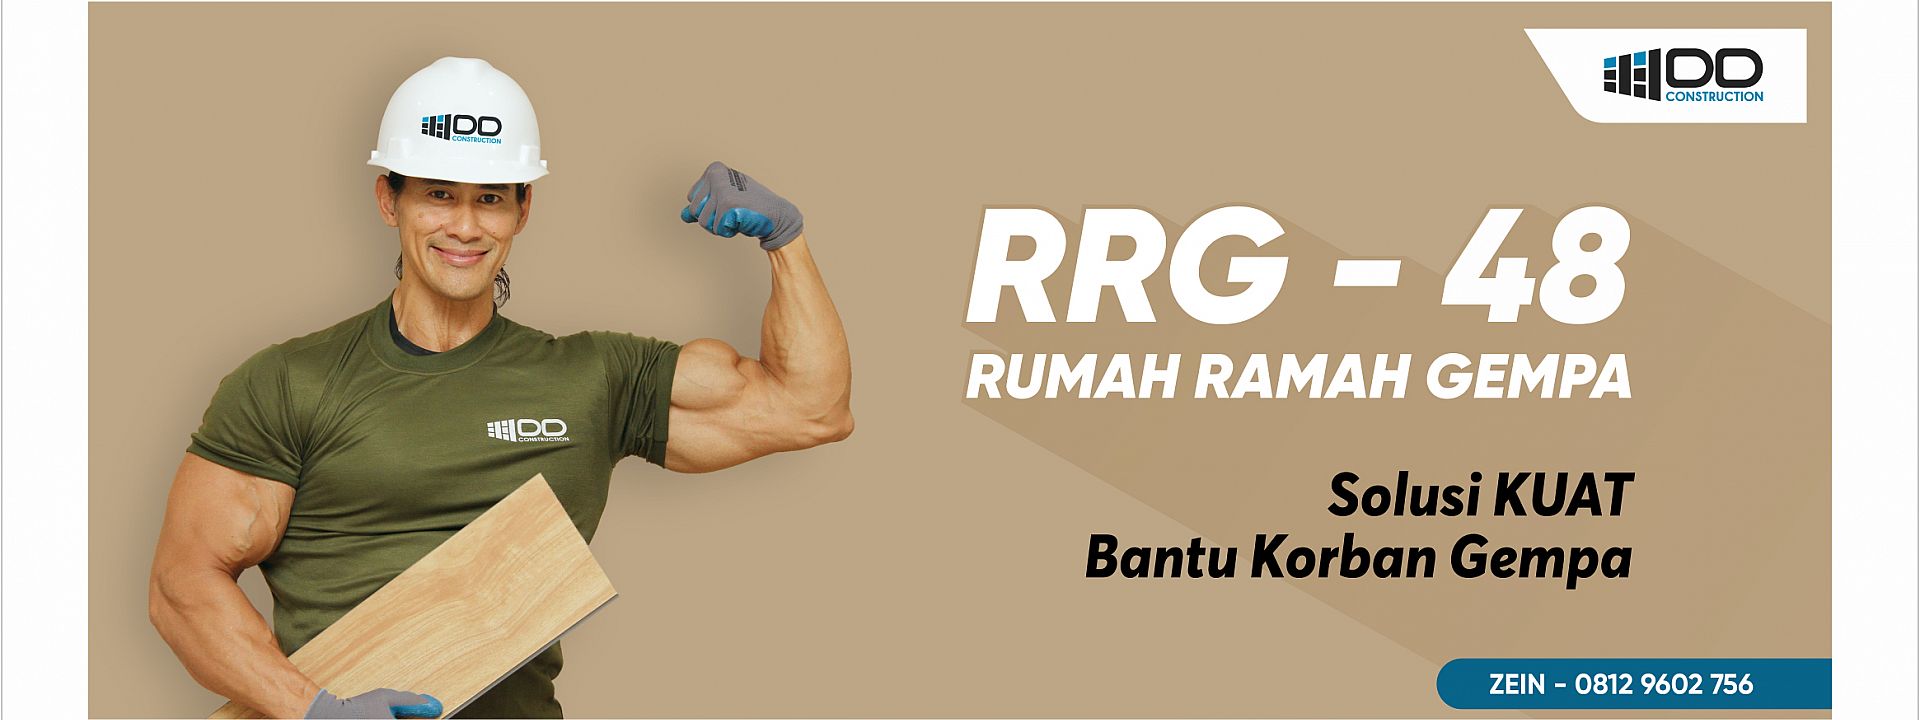 RRG - 48 RUMAH RAMAH GEMPA